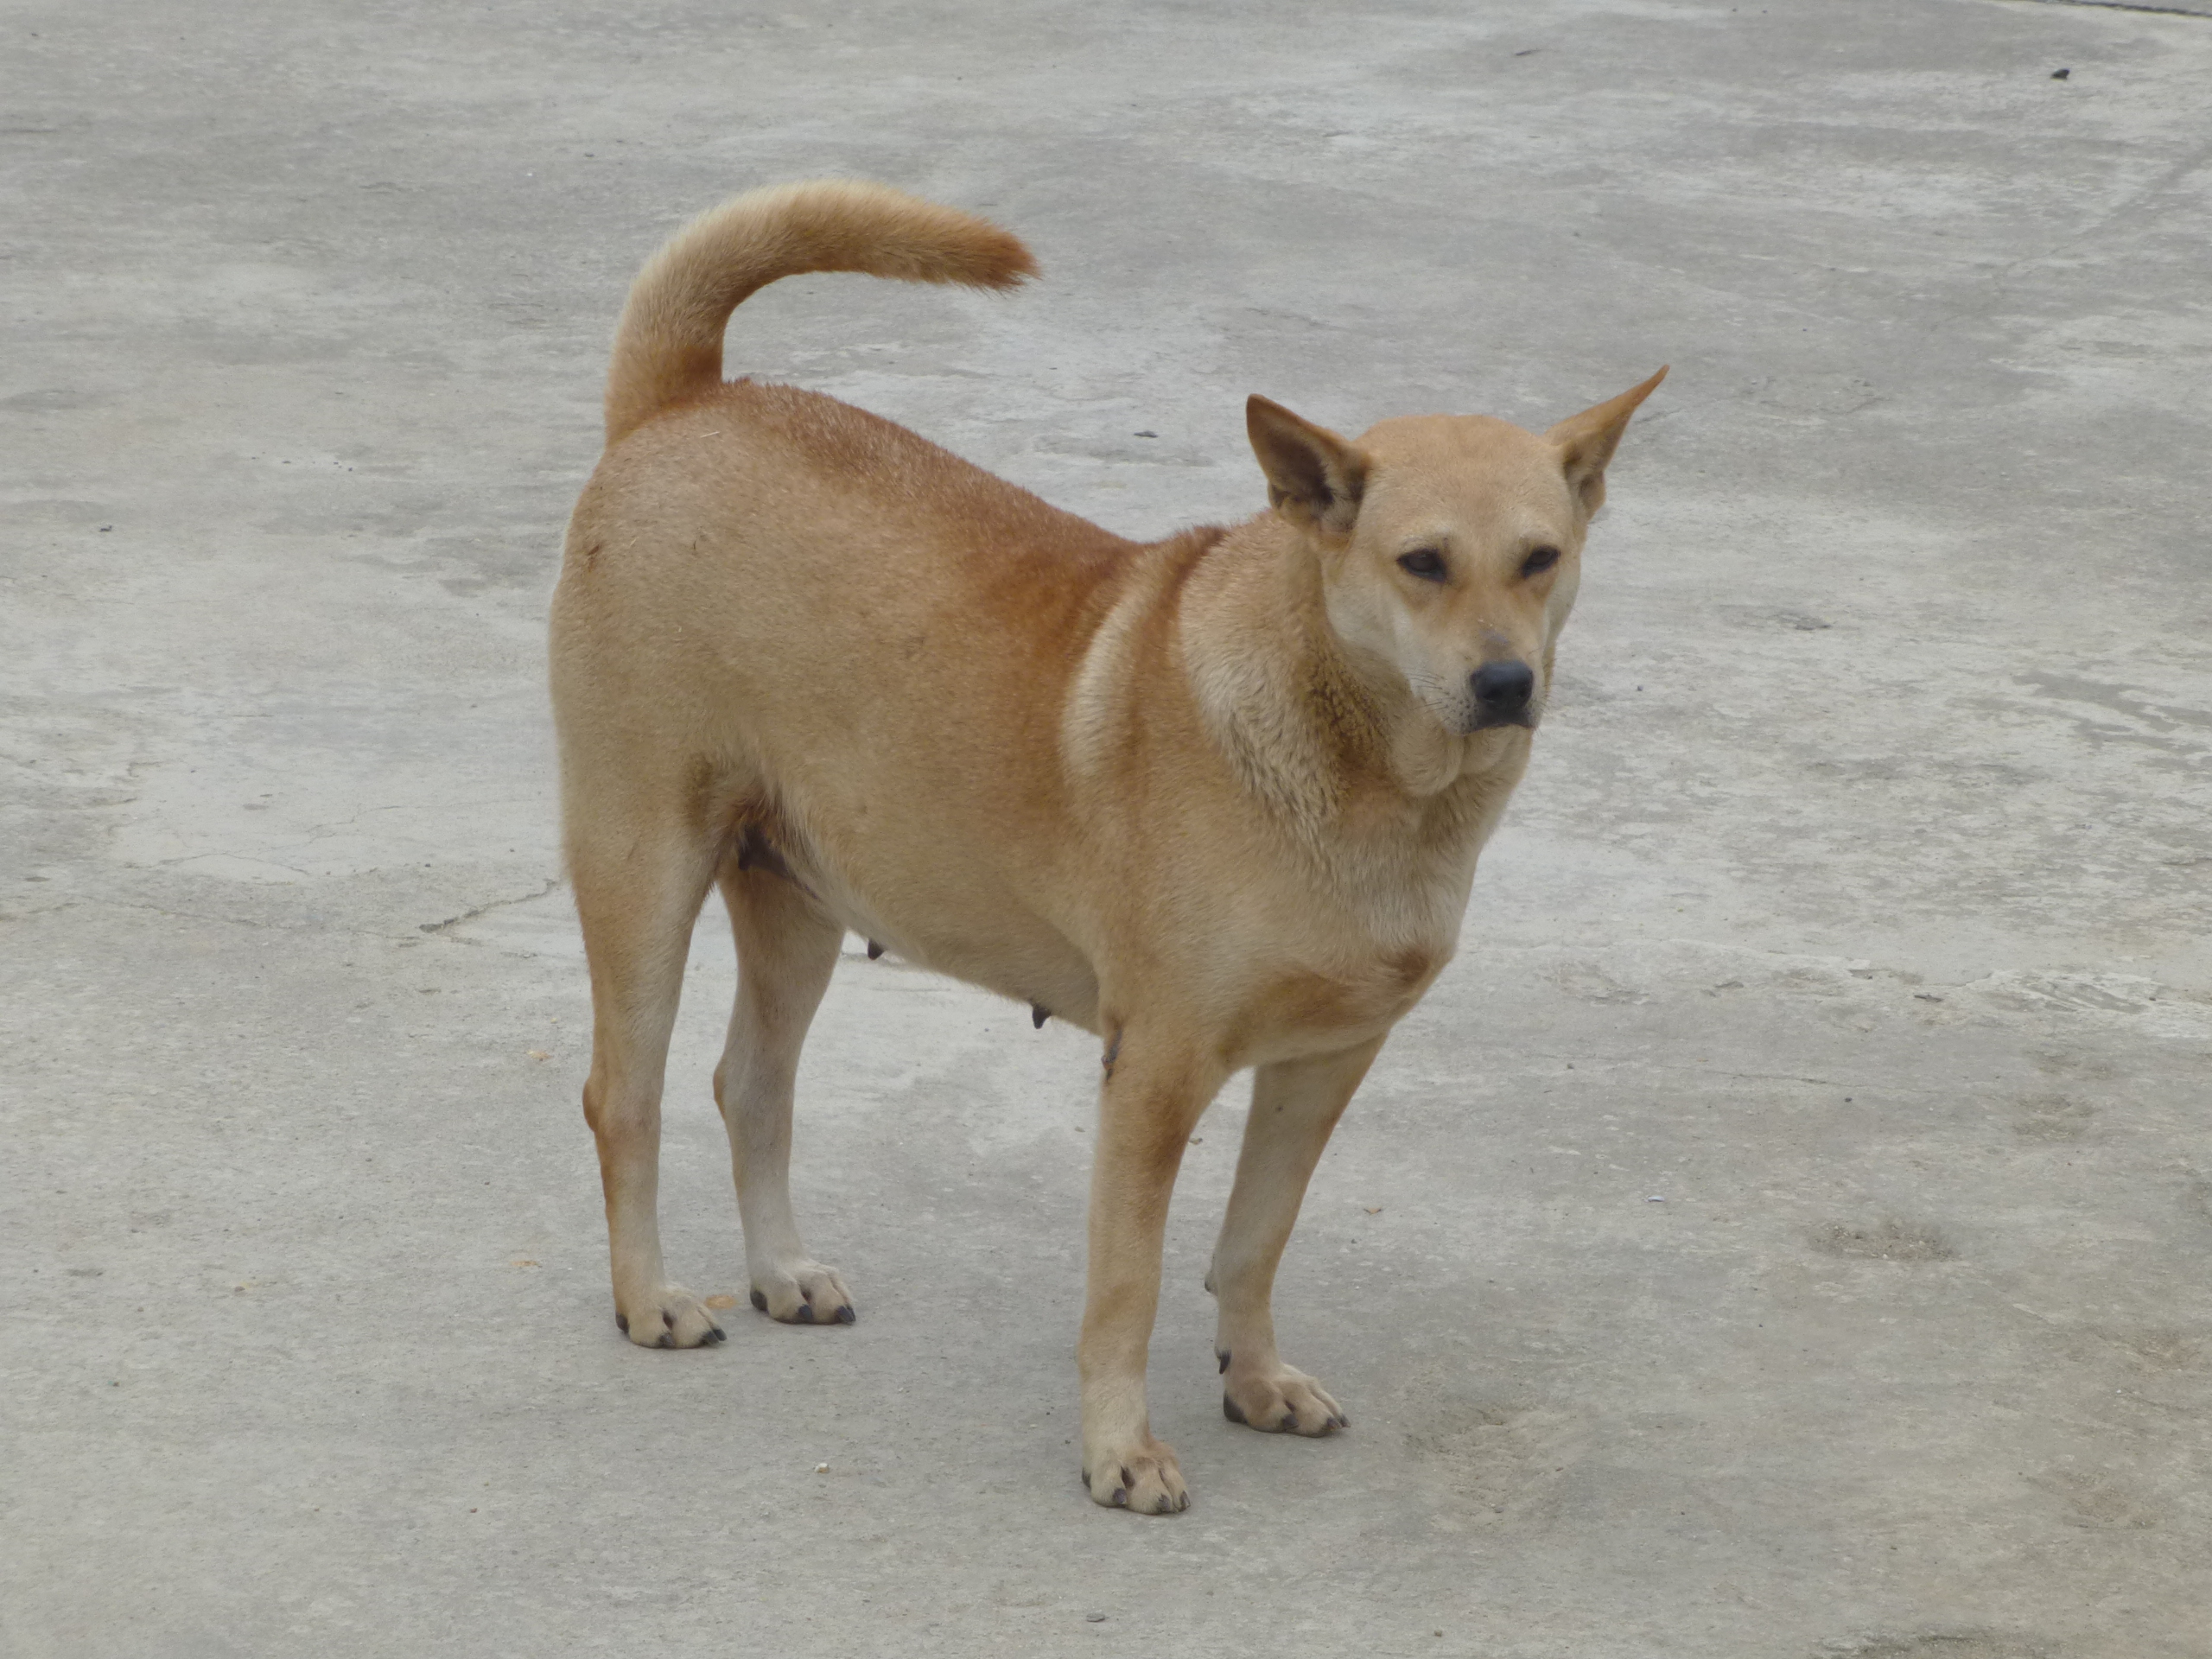 Tìm hiểu về các giống chó phổ biến tại Việt Nam với ảnh chó Việt Nam và thông tin chi tiết